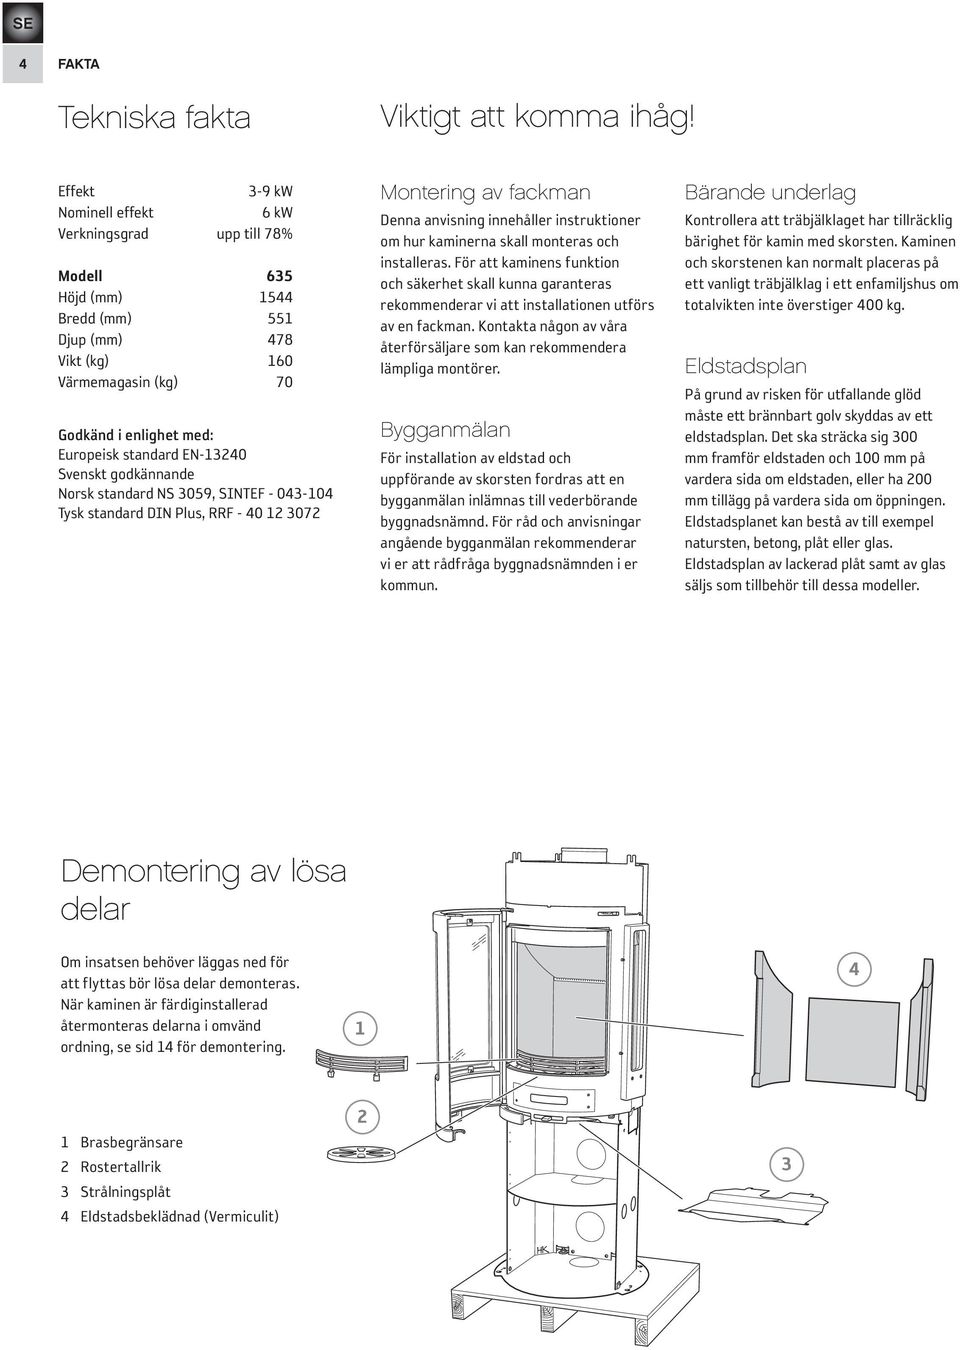 EN-13240 Svenskt godkännande Norsk standard NS 3059, SINTEF - 043-104 Tysk standard DIN Plus, RRF - 40 12 3072 Montering av fackman Denna anvisning innehåller instruktioner om hur kaminerna skall